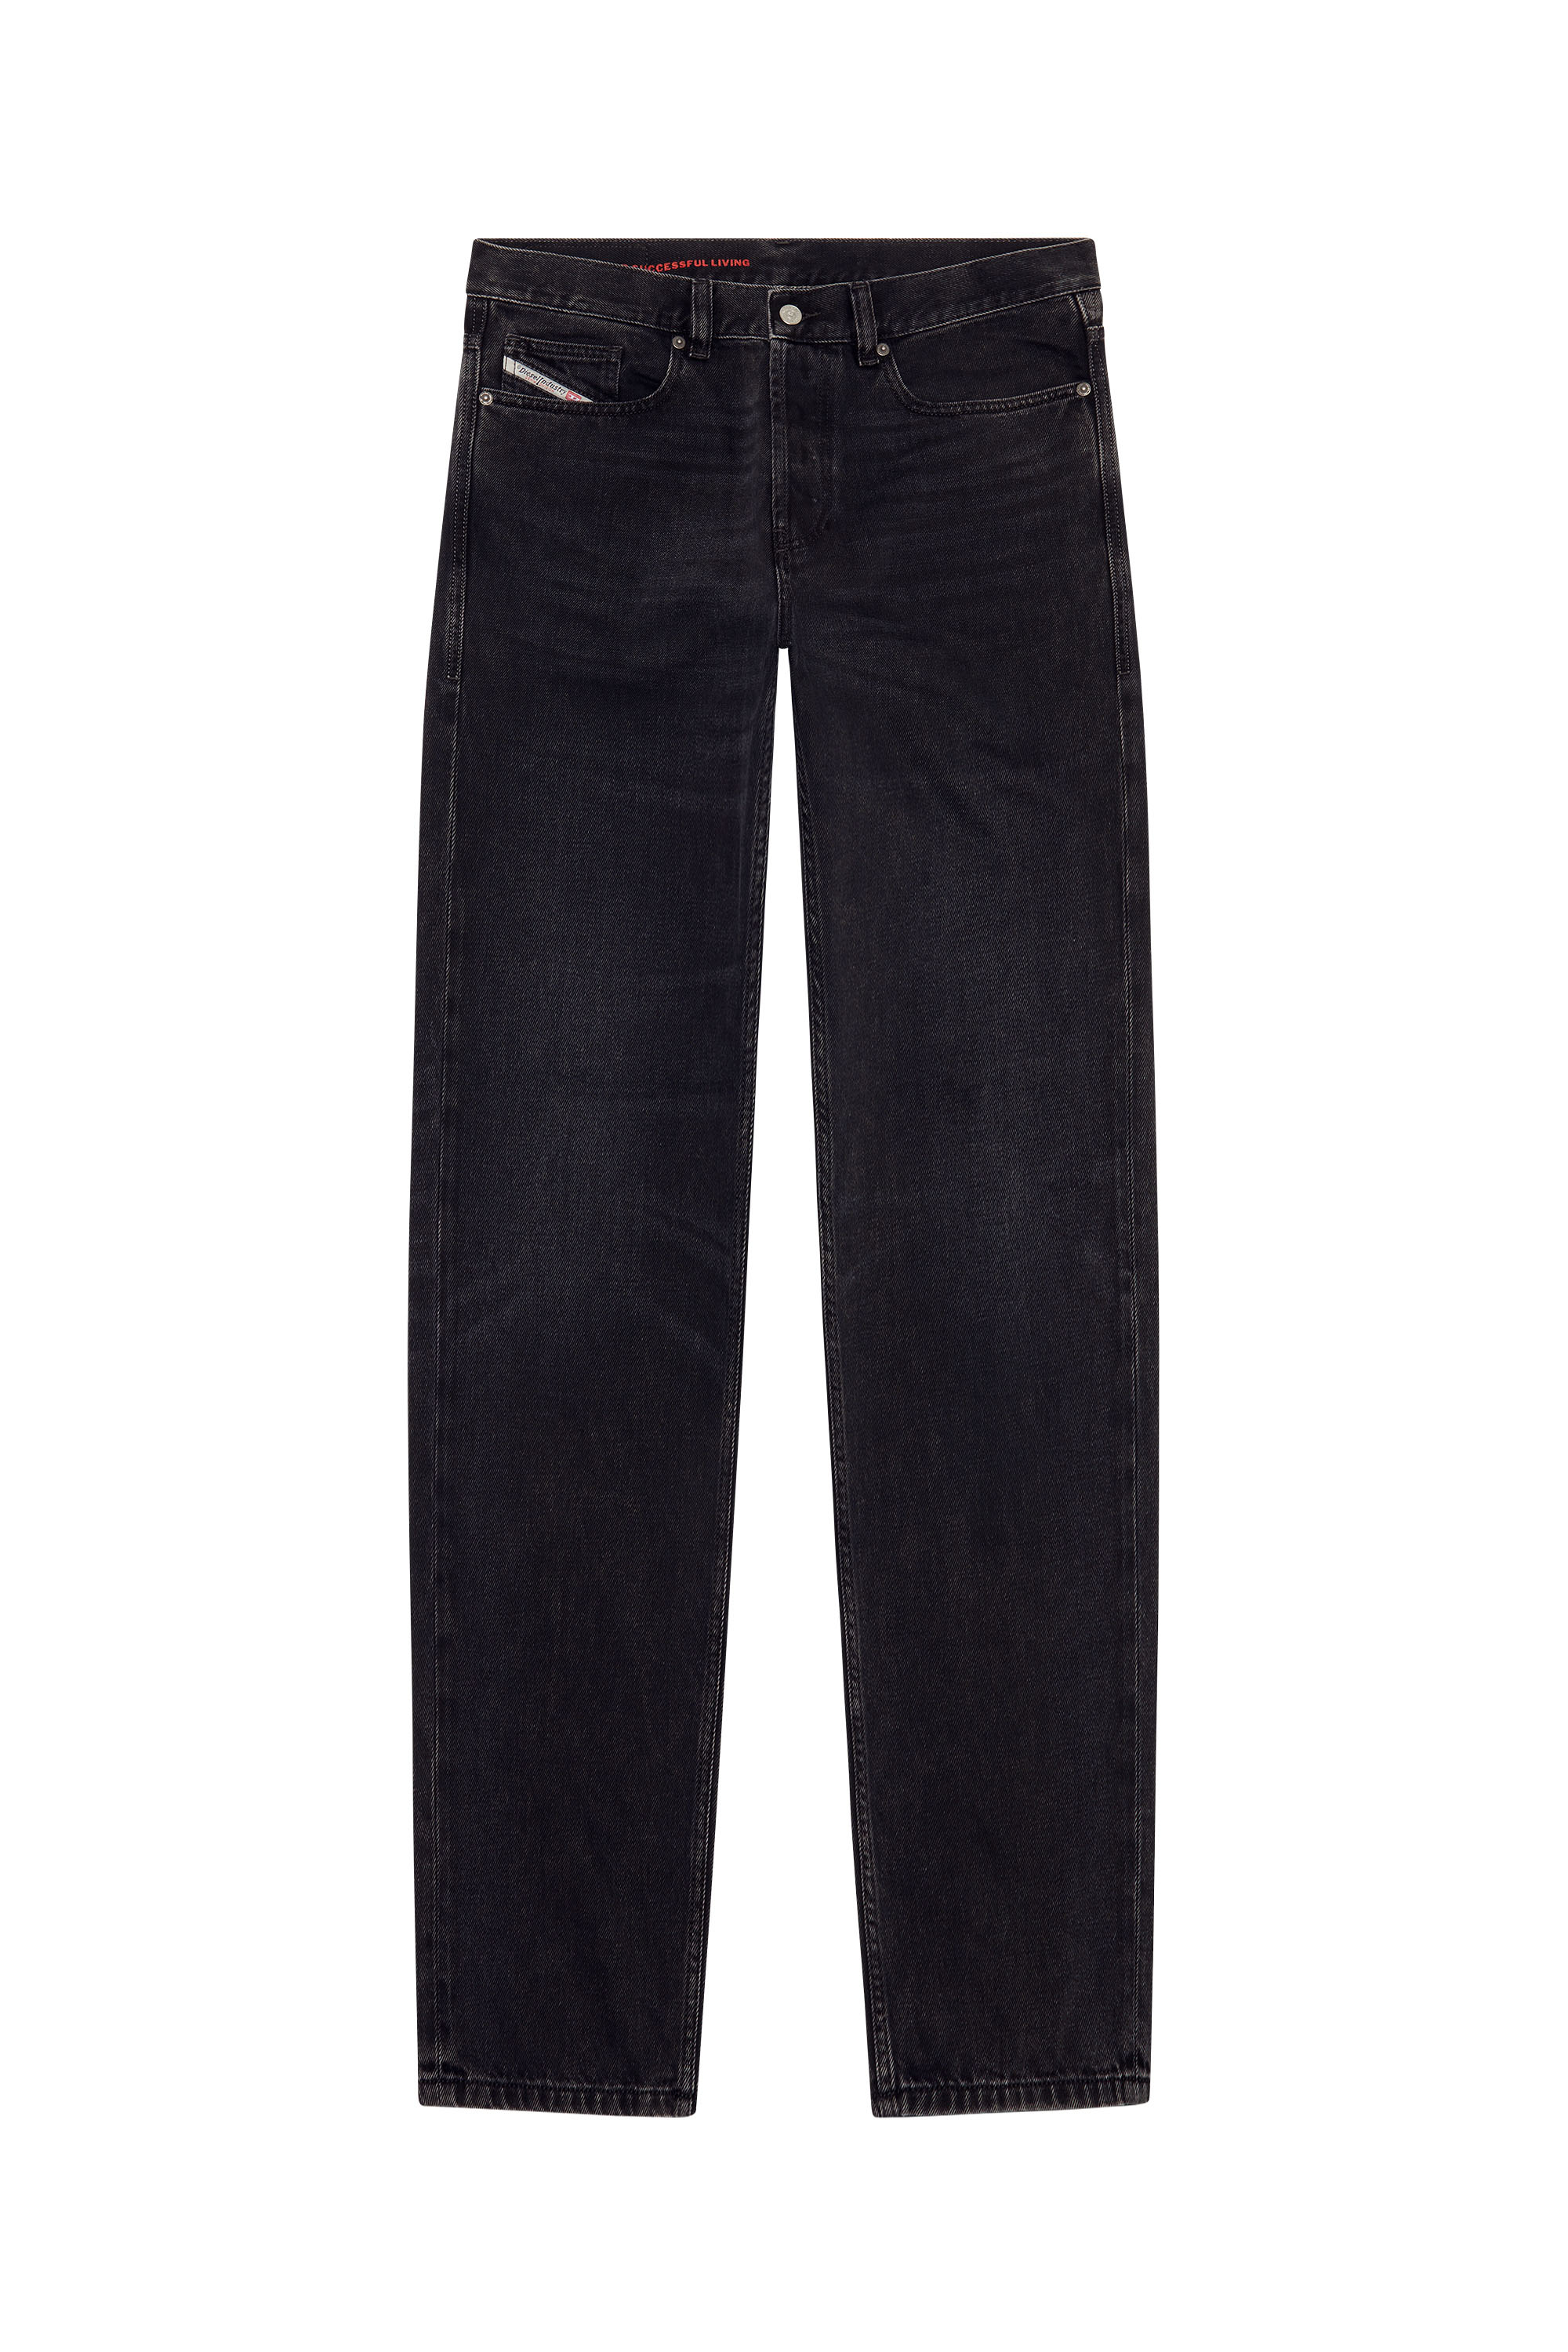 2010 D-Macs 09B88 Straight Jeans, Black/Dark grey - Jeans